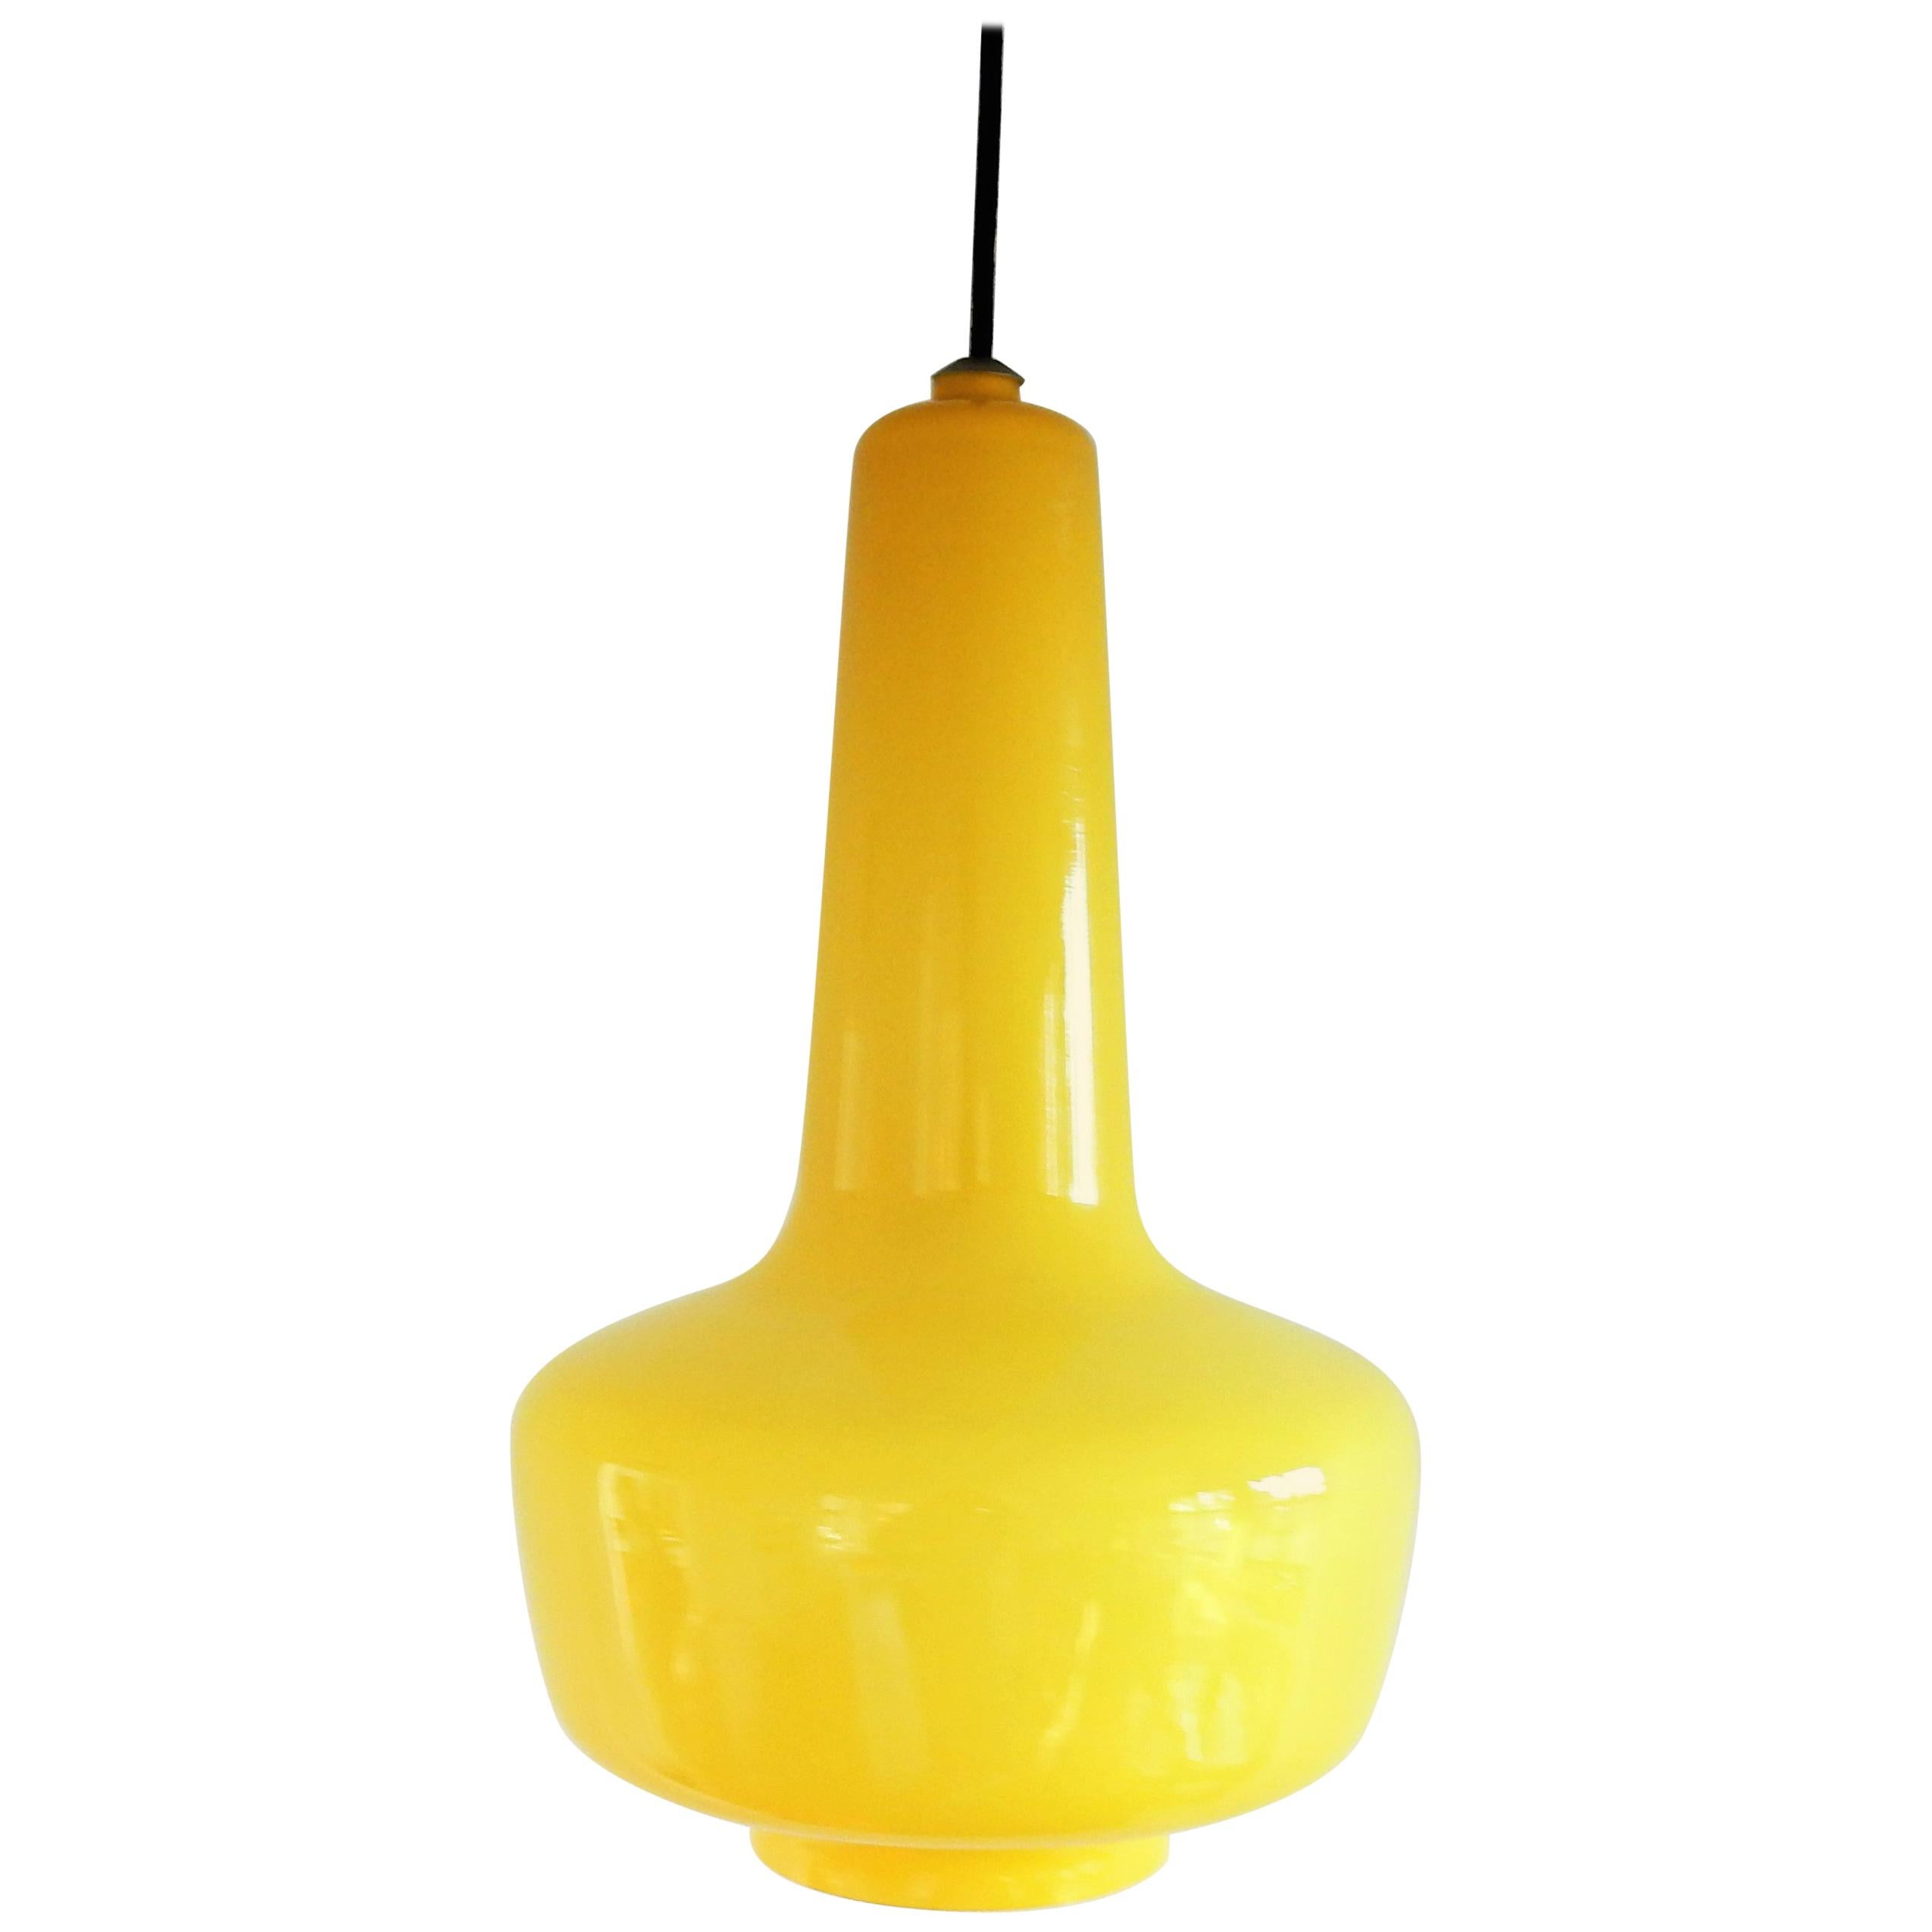 Yellow 'Kreta' pendant lamp by Jacob Eiler Bang for Fog & Mørup, Denmark, 1960s